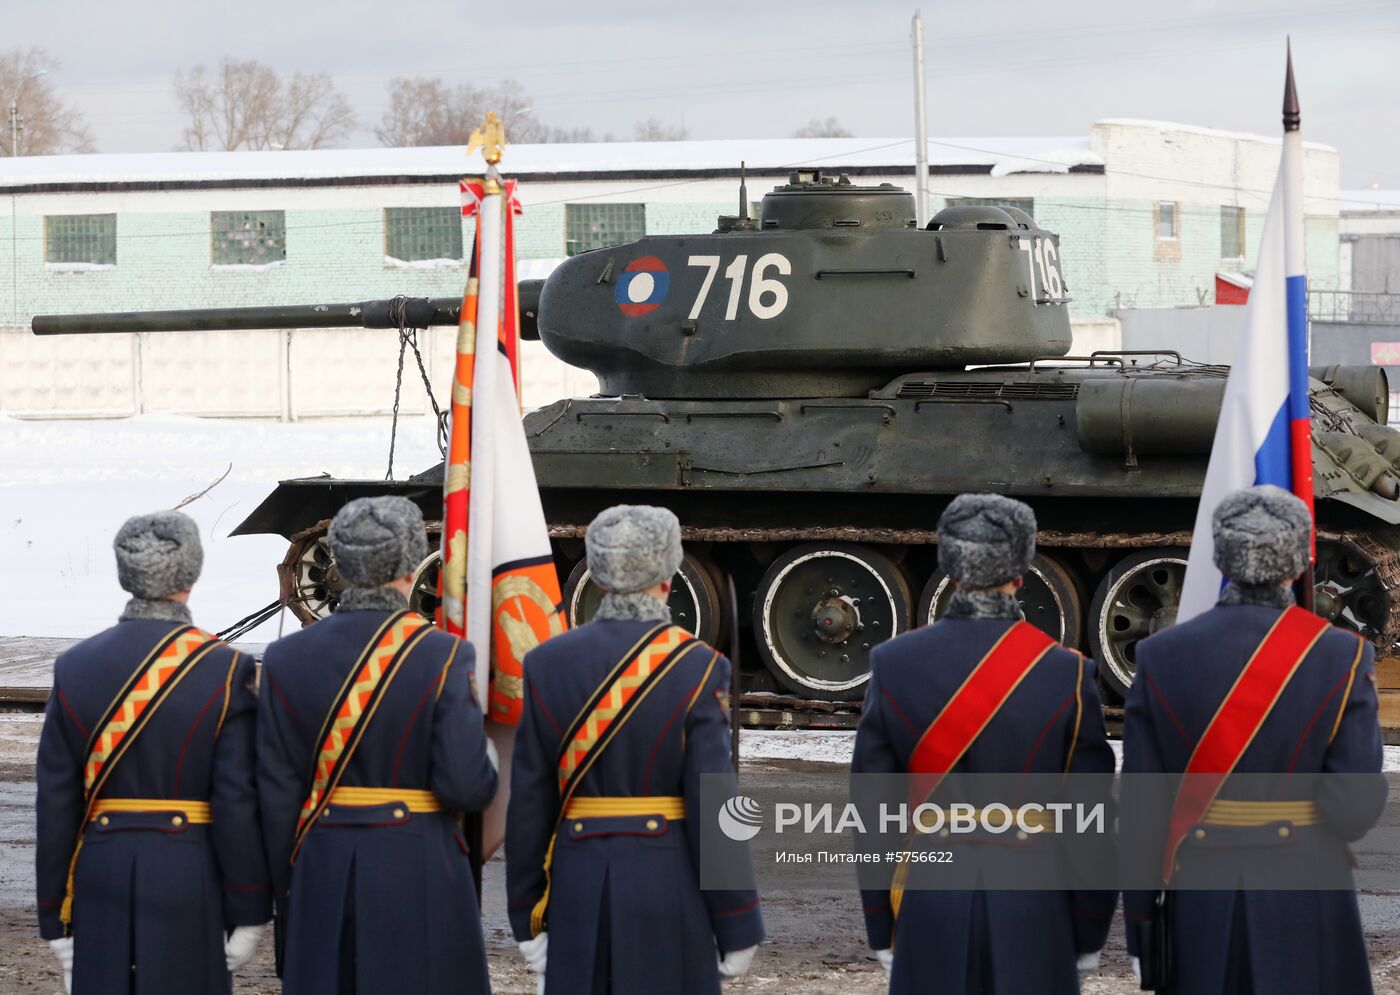 Прибытие эшелона с танками Т-34 в Московскую область   